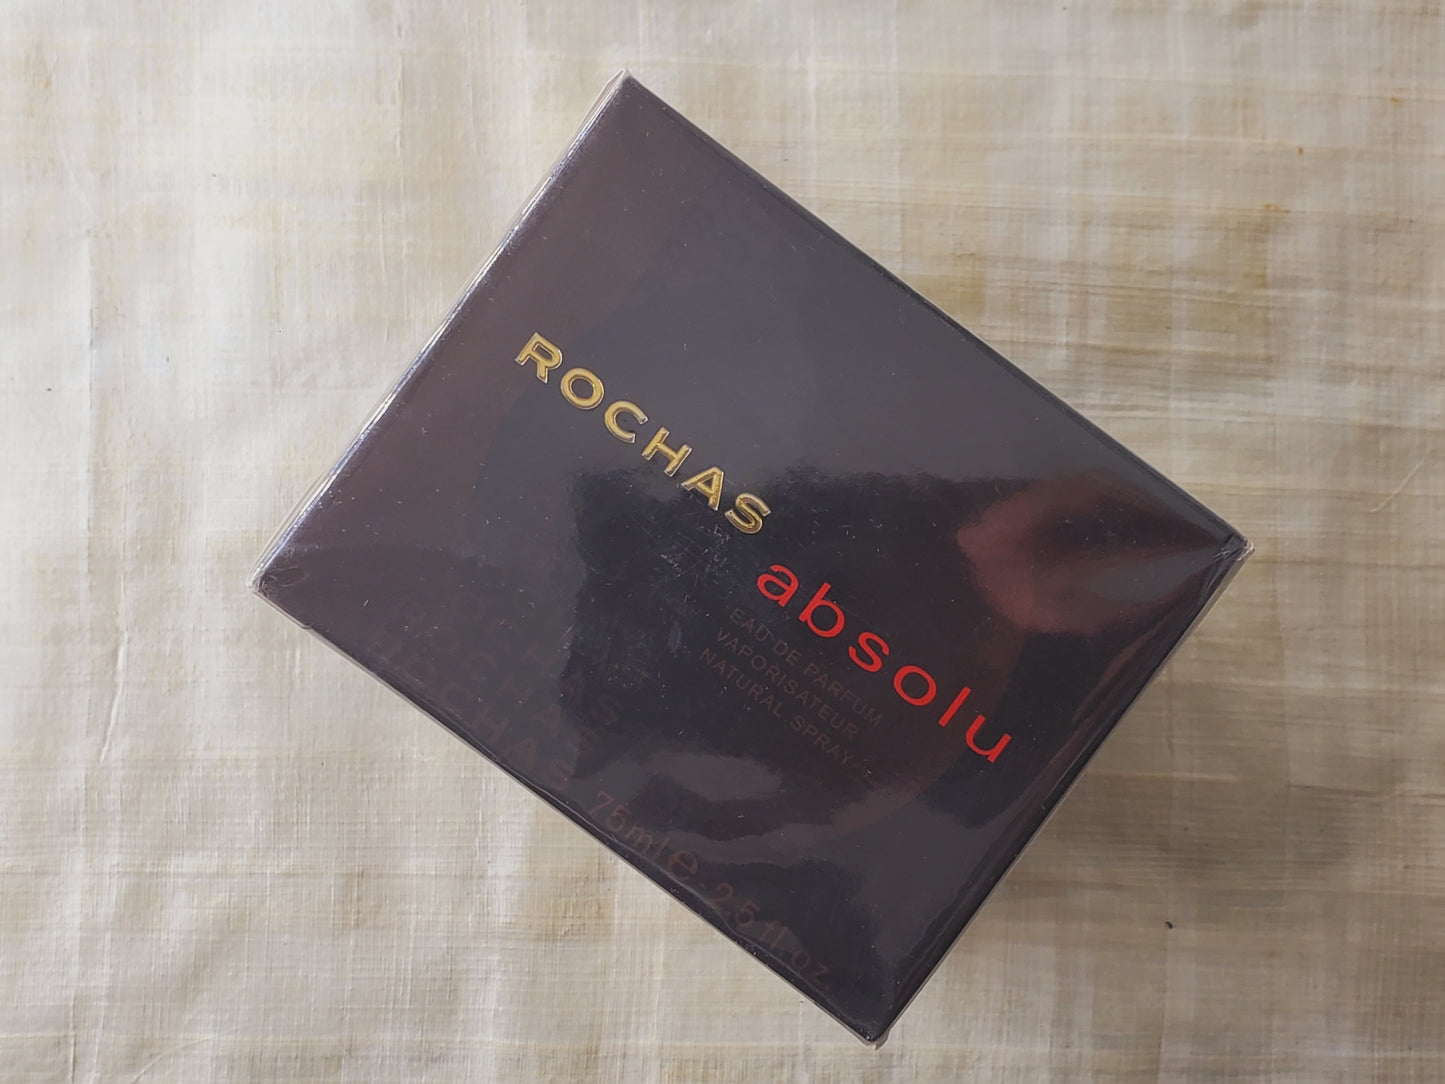 Absolu Rochas for women EDP Spray 75 ml 2.5 oz, Vintage, Rare, Sealed